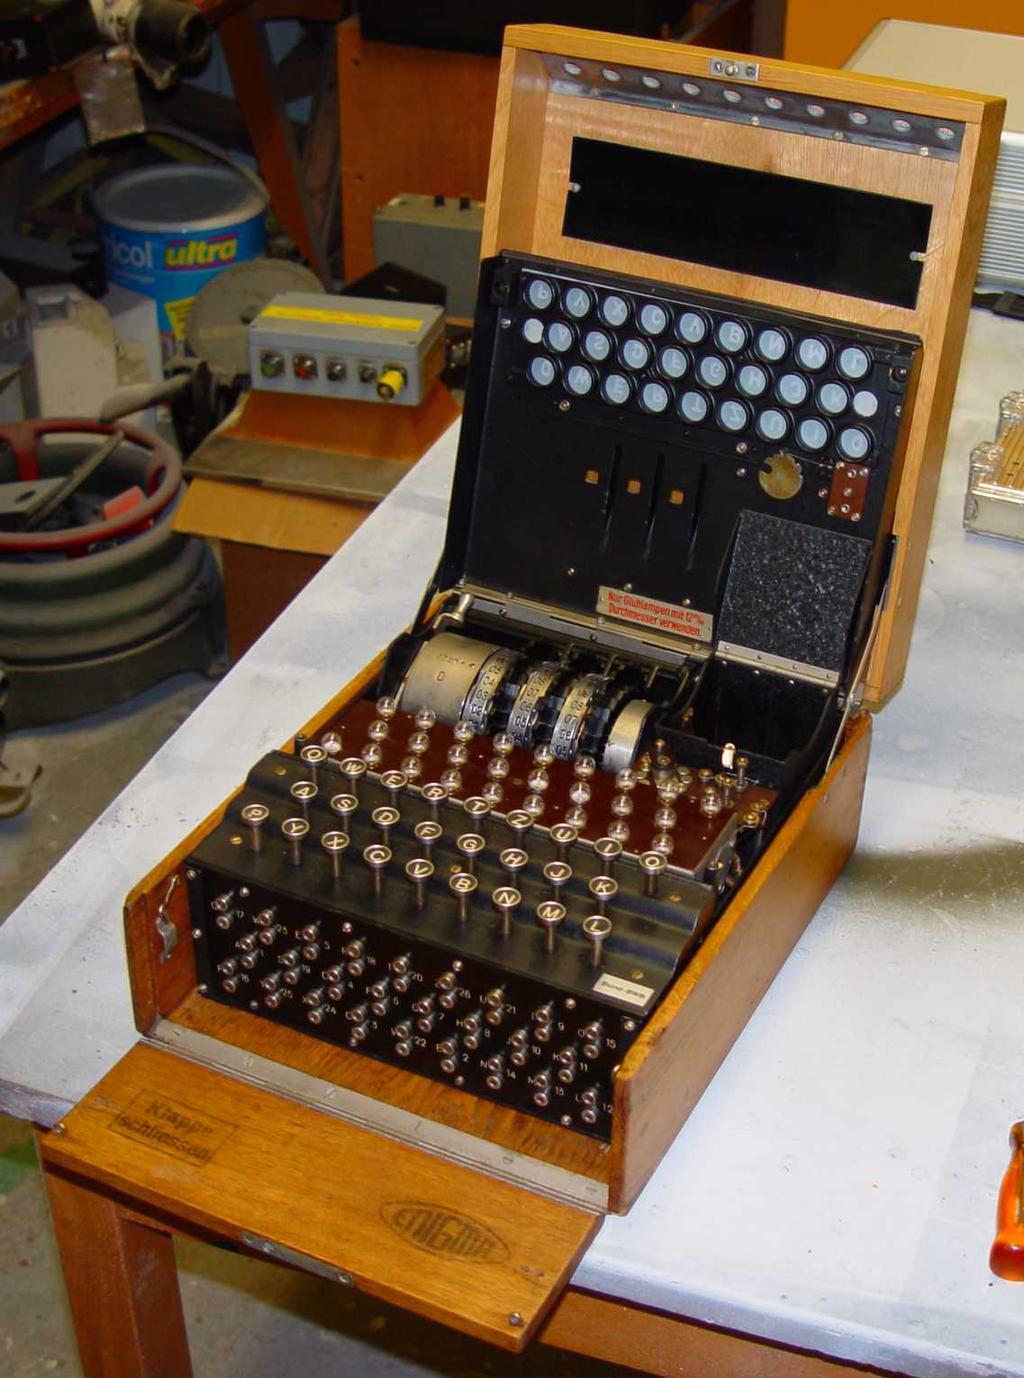 Abbildung 1: Einige Fotos der Enigma aus dem wehrtechnischen Museum, welche als Vorbild für die Pläne diente.